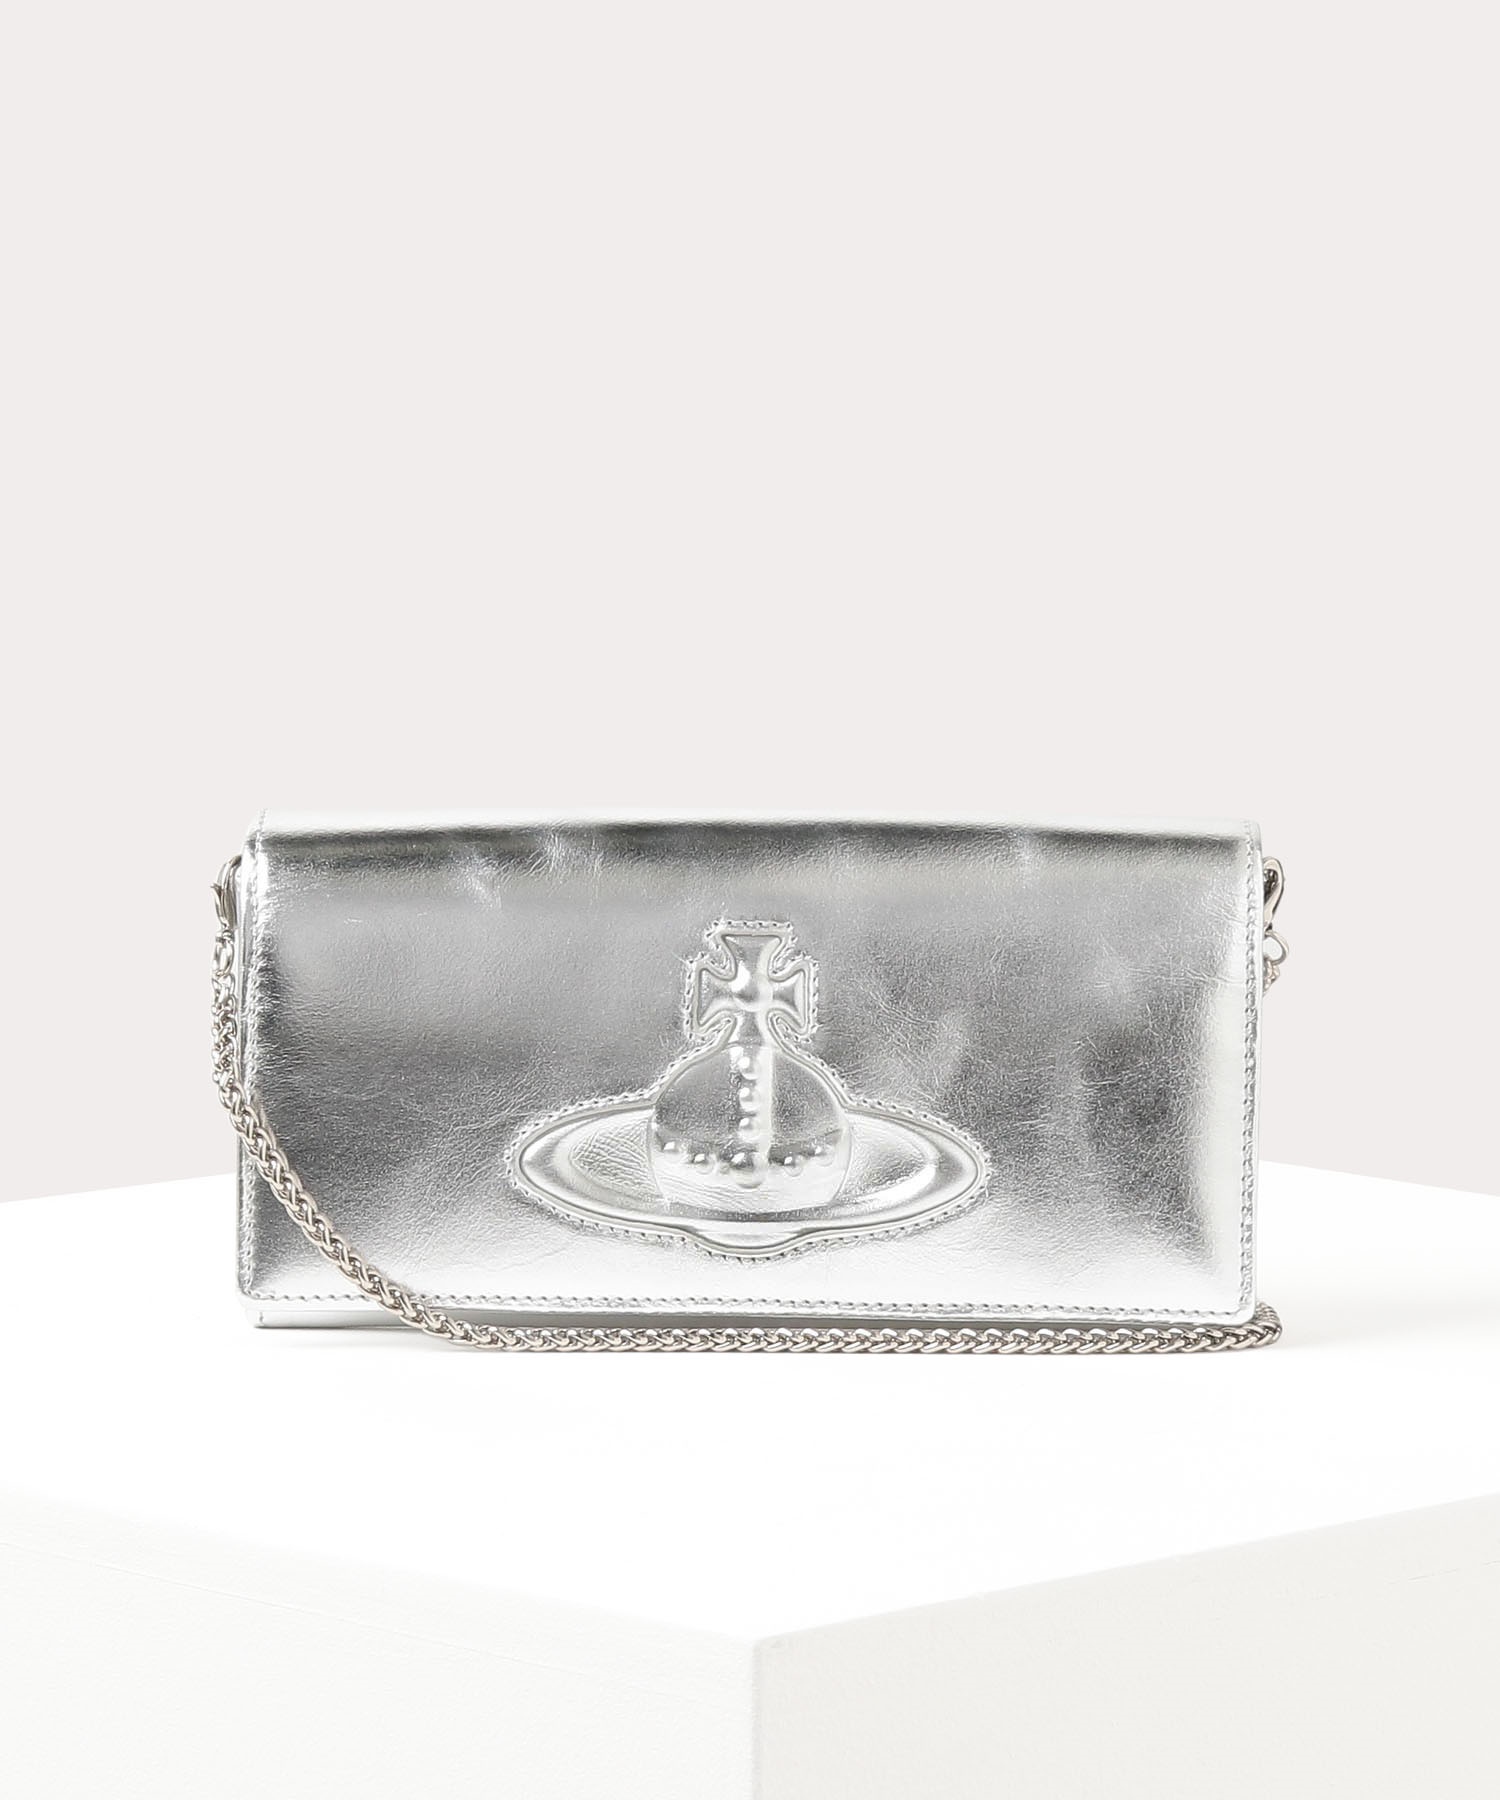 40代女性に人気の財布はVivienne WestwoodのCHELSEA チェーン付長財布です